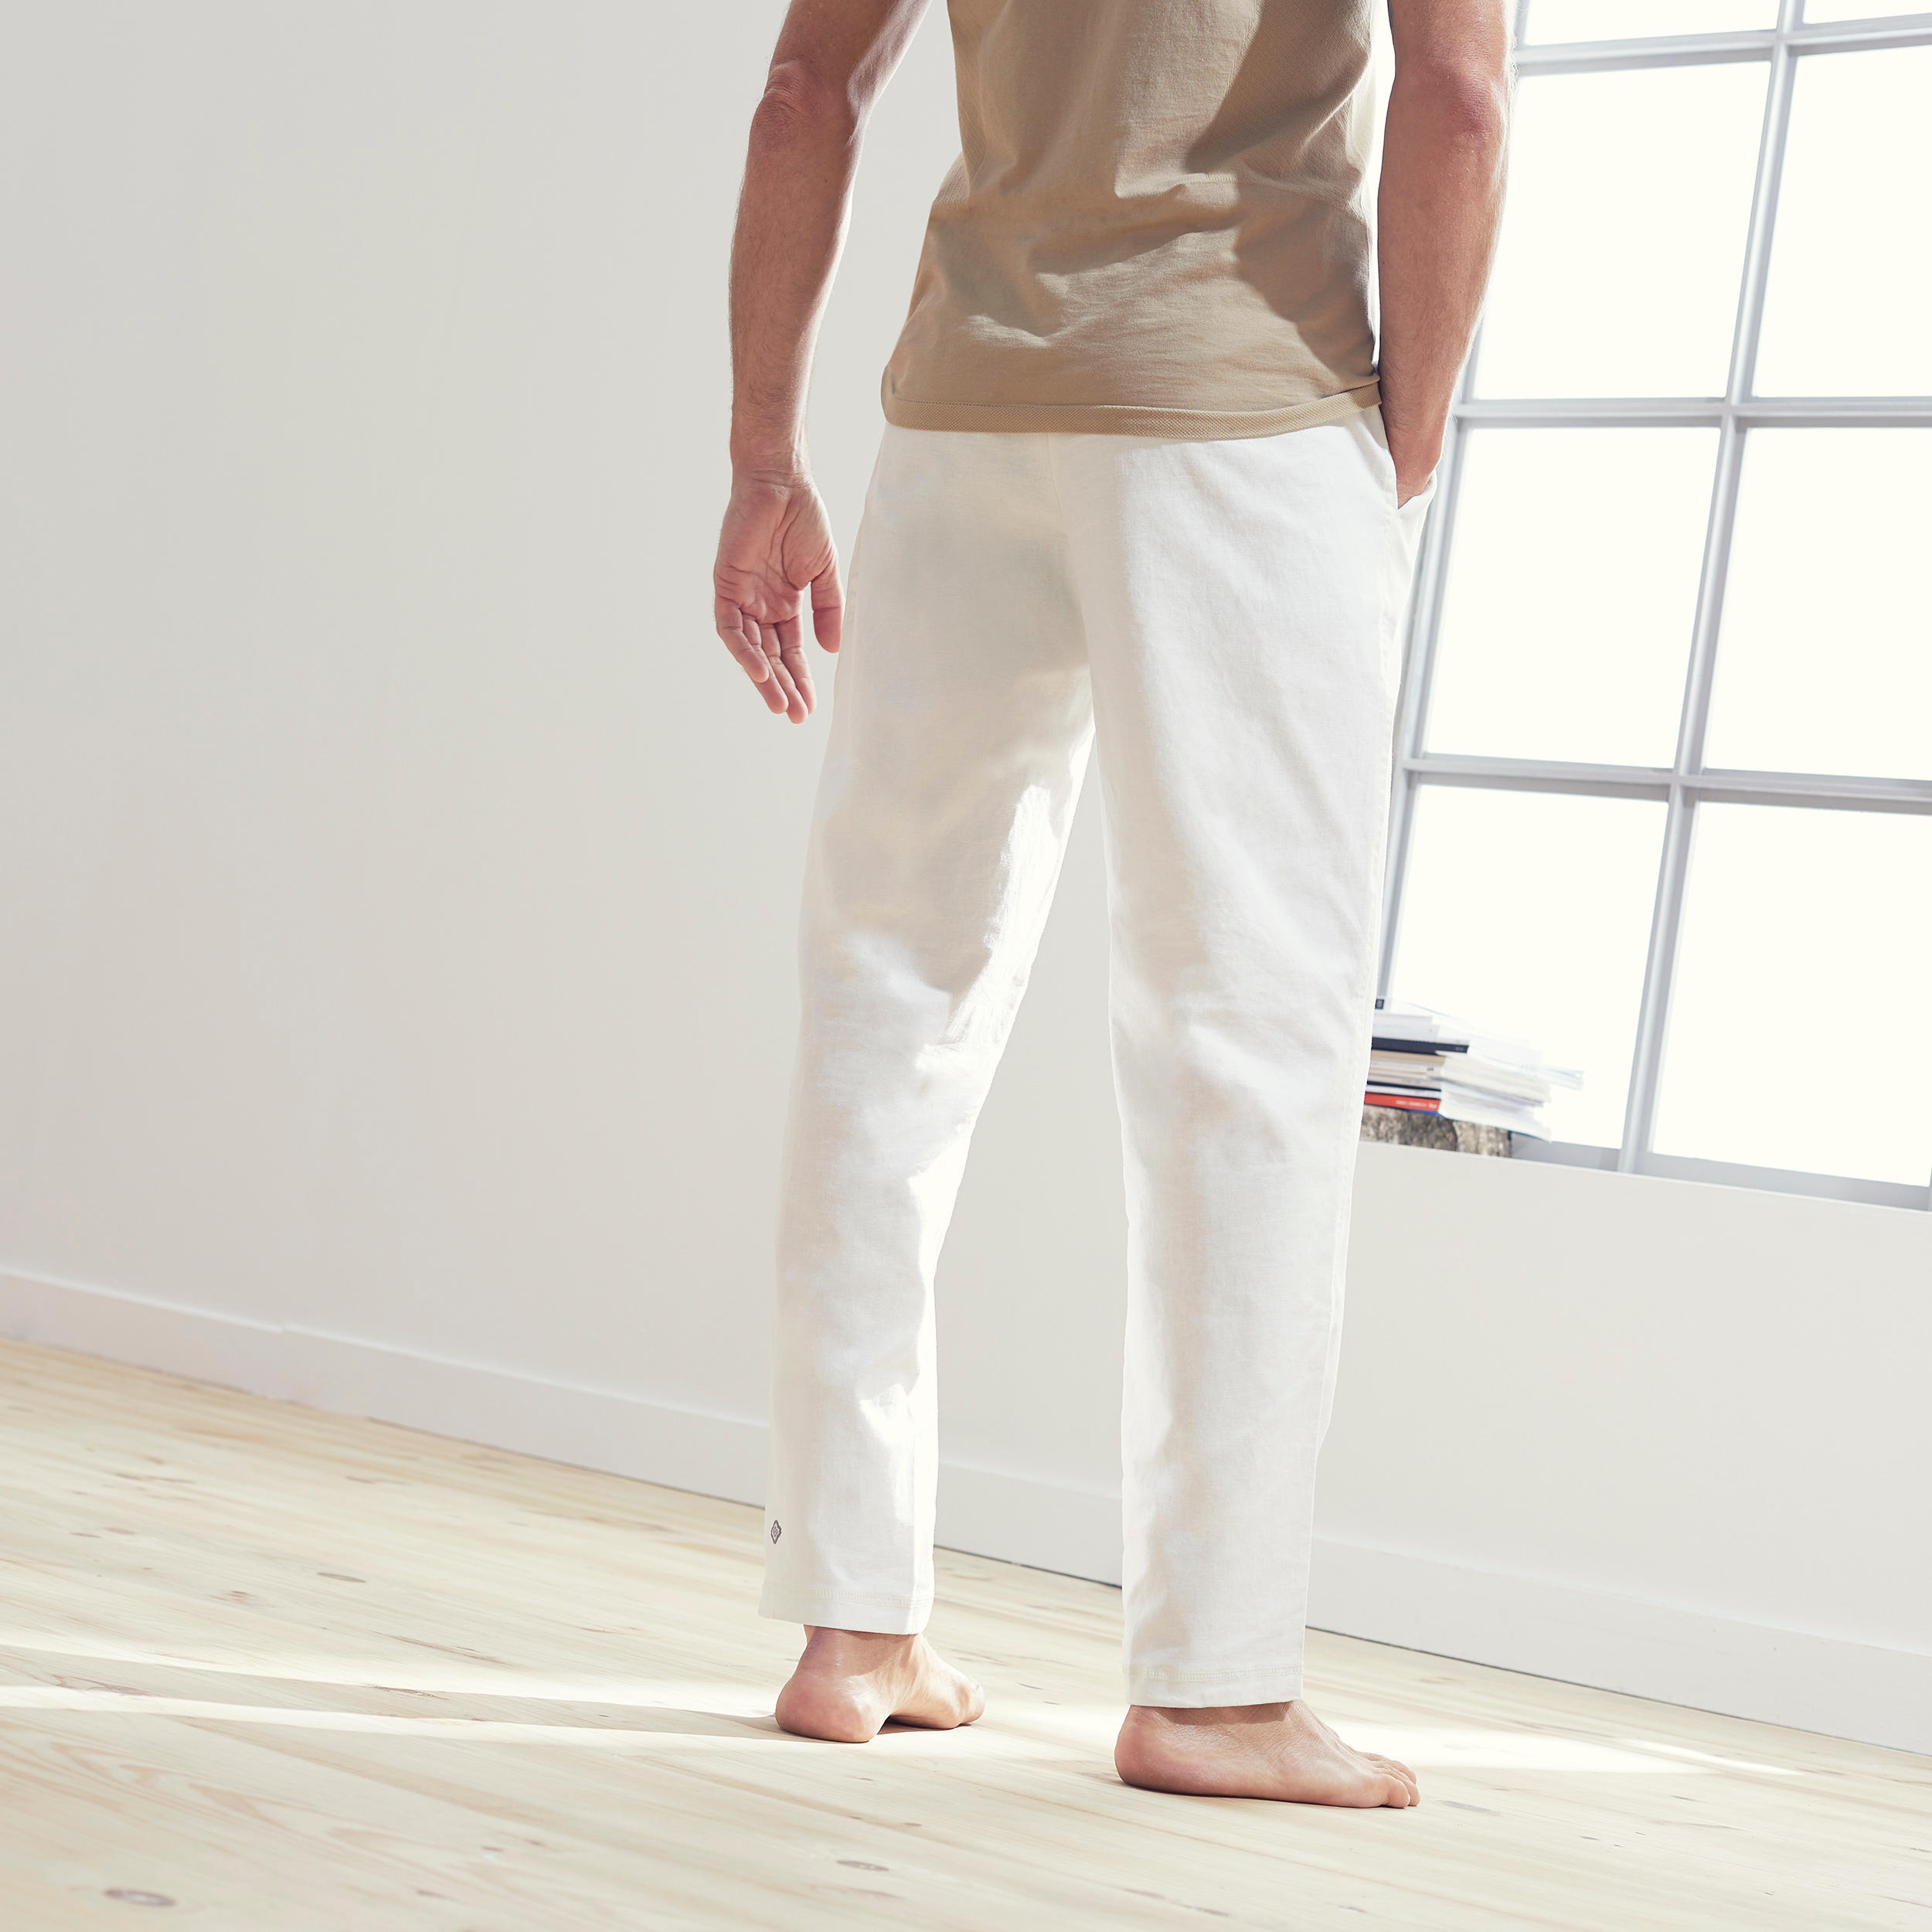 Men's Gentle Yoga Woven Bottoms - White 7/8